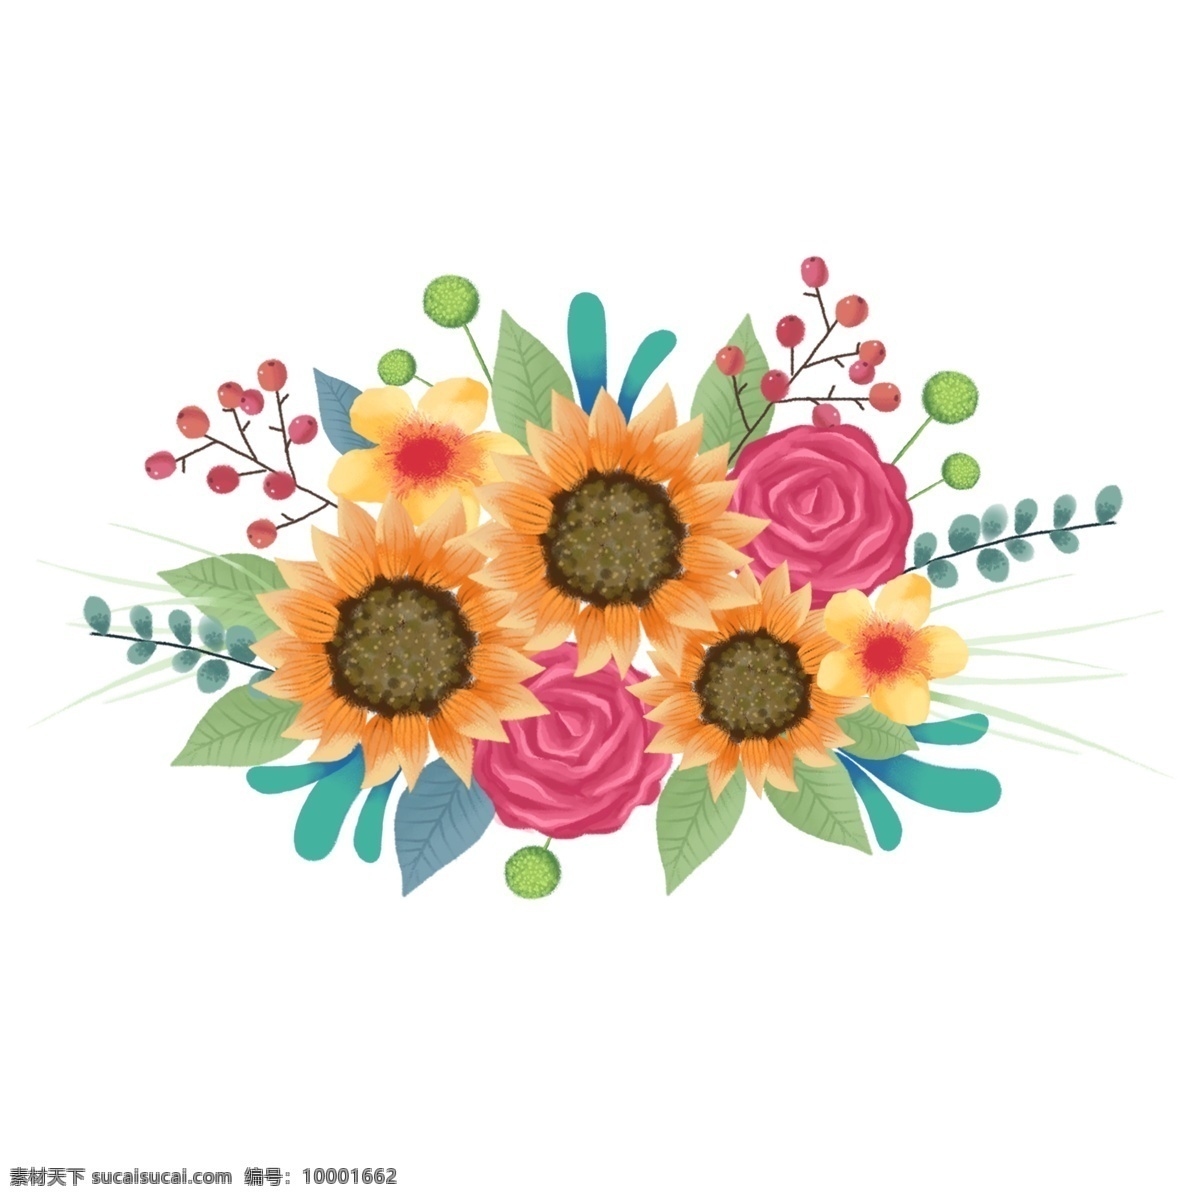 手绘 清新 唯美 卡通 花卉 植物 花束 向日葵 可爱 花 浪漫 装饰